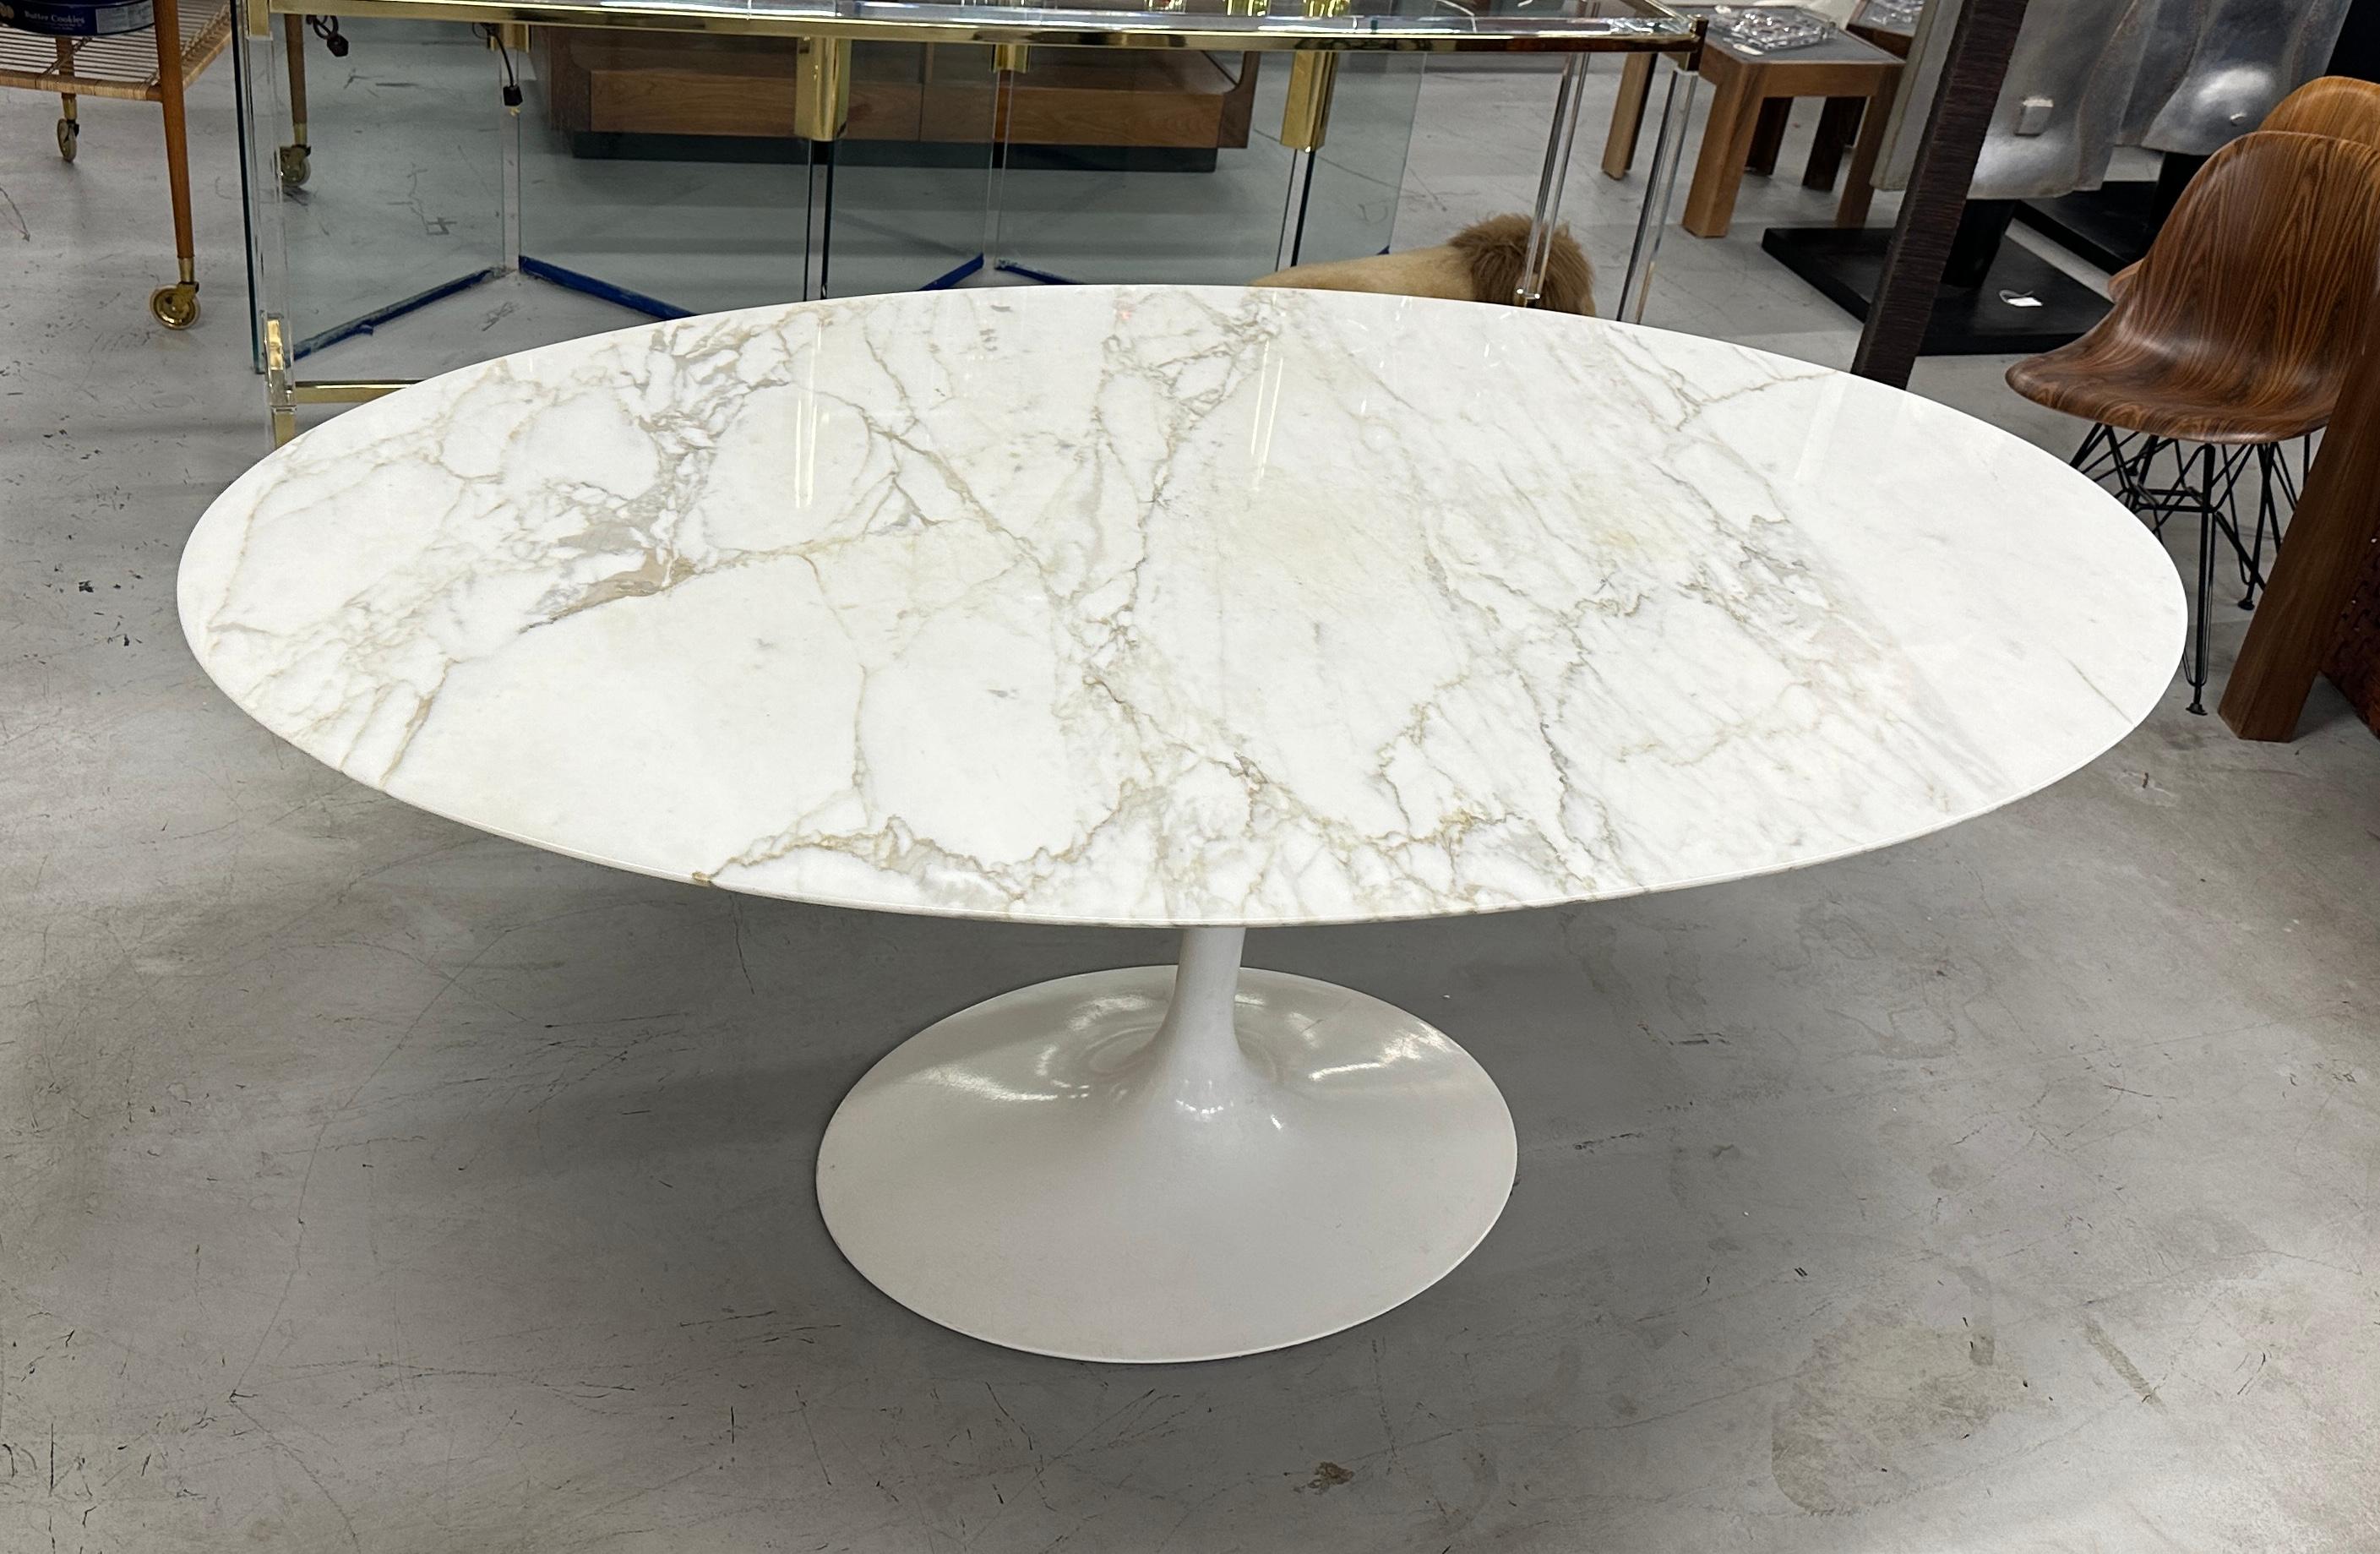 Magnifique table ovale Saarinen Tulip de Knoll avec plateau en marbre de 78 pouces. Nous avons acheté 2 tables de 78 pouces datant des années 1960 avec une seule base vintage. Nous avons réussi à trouver une base Genuine Knoll des années 1990 et à